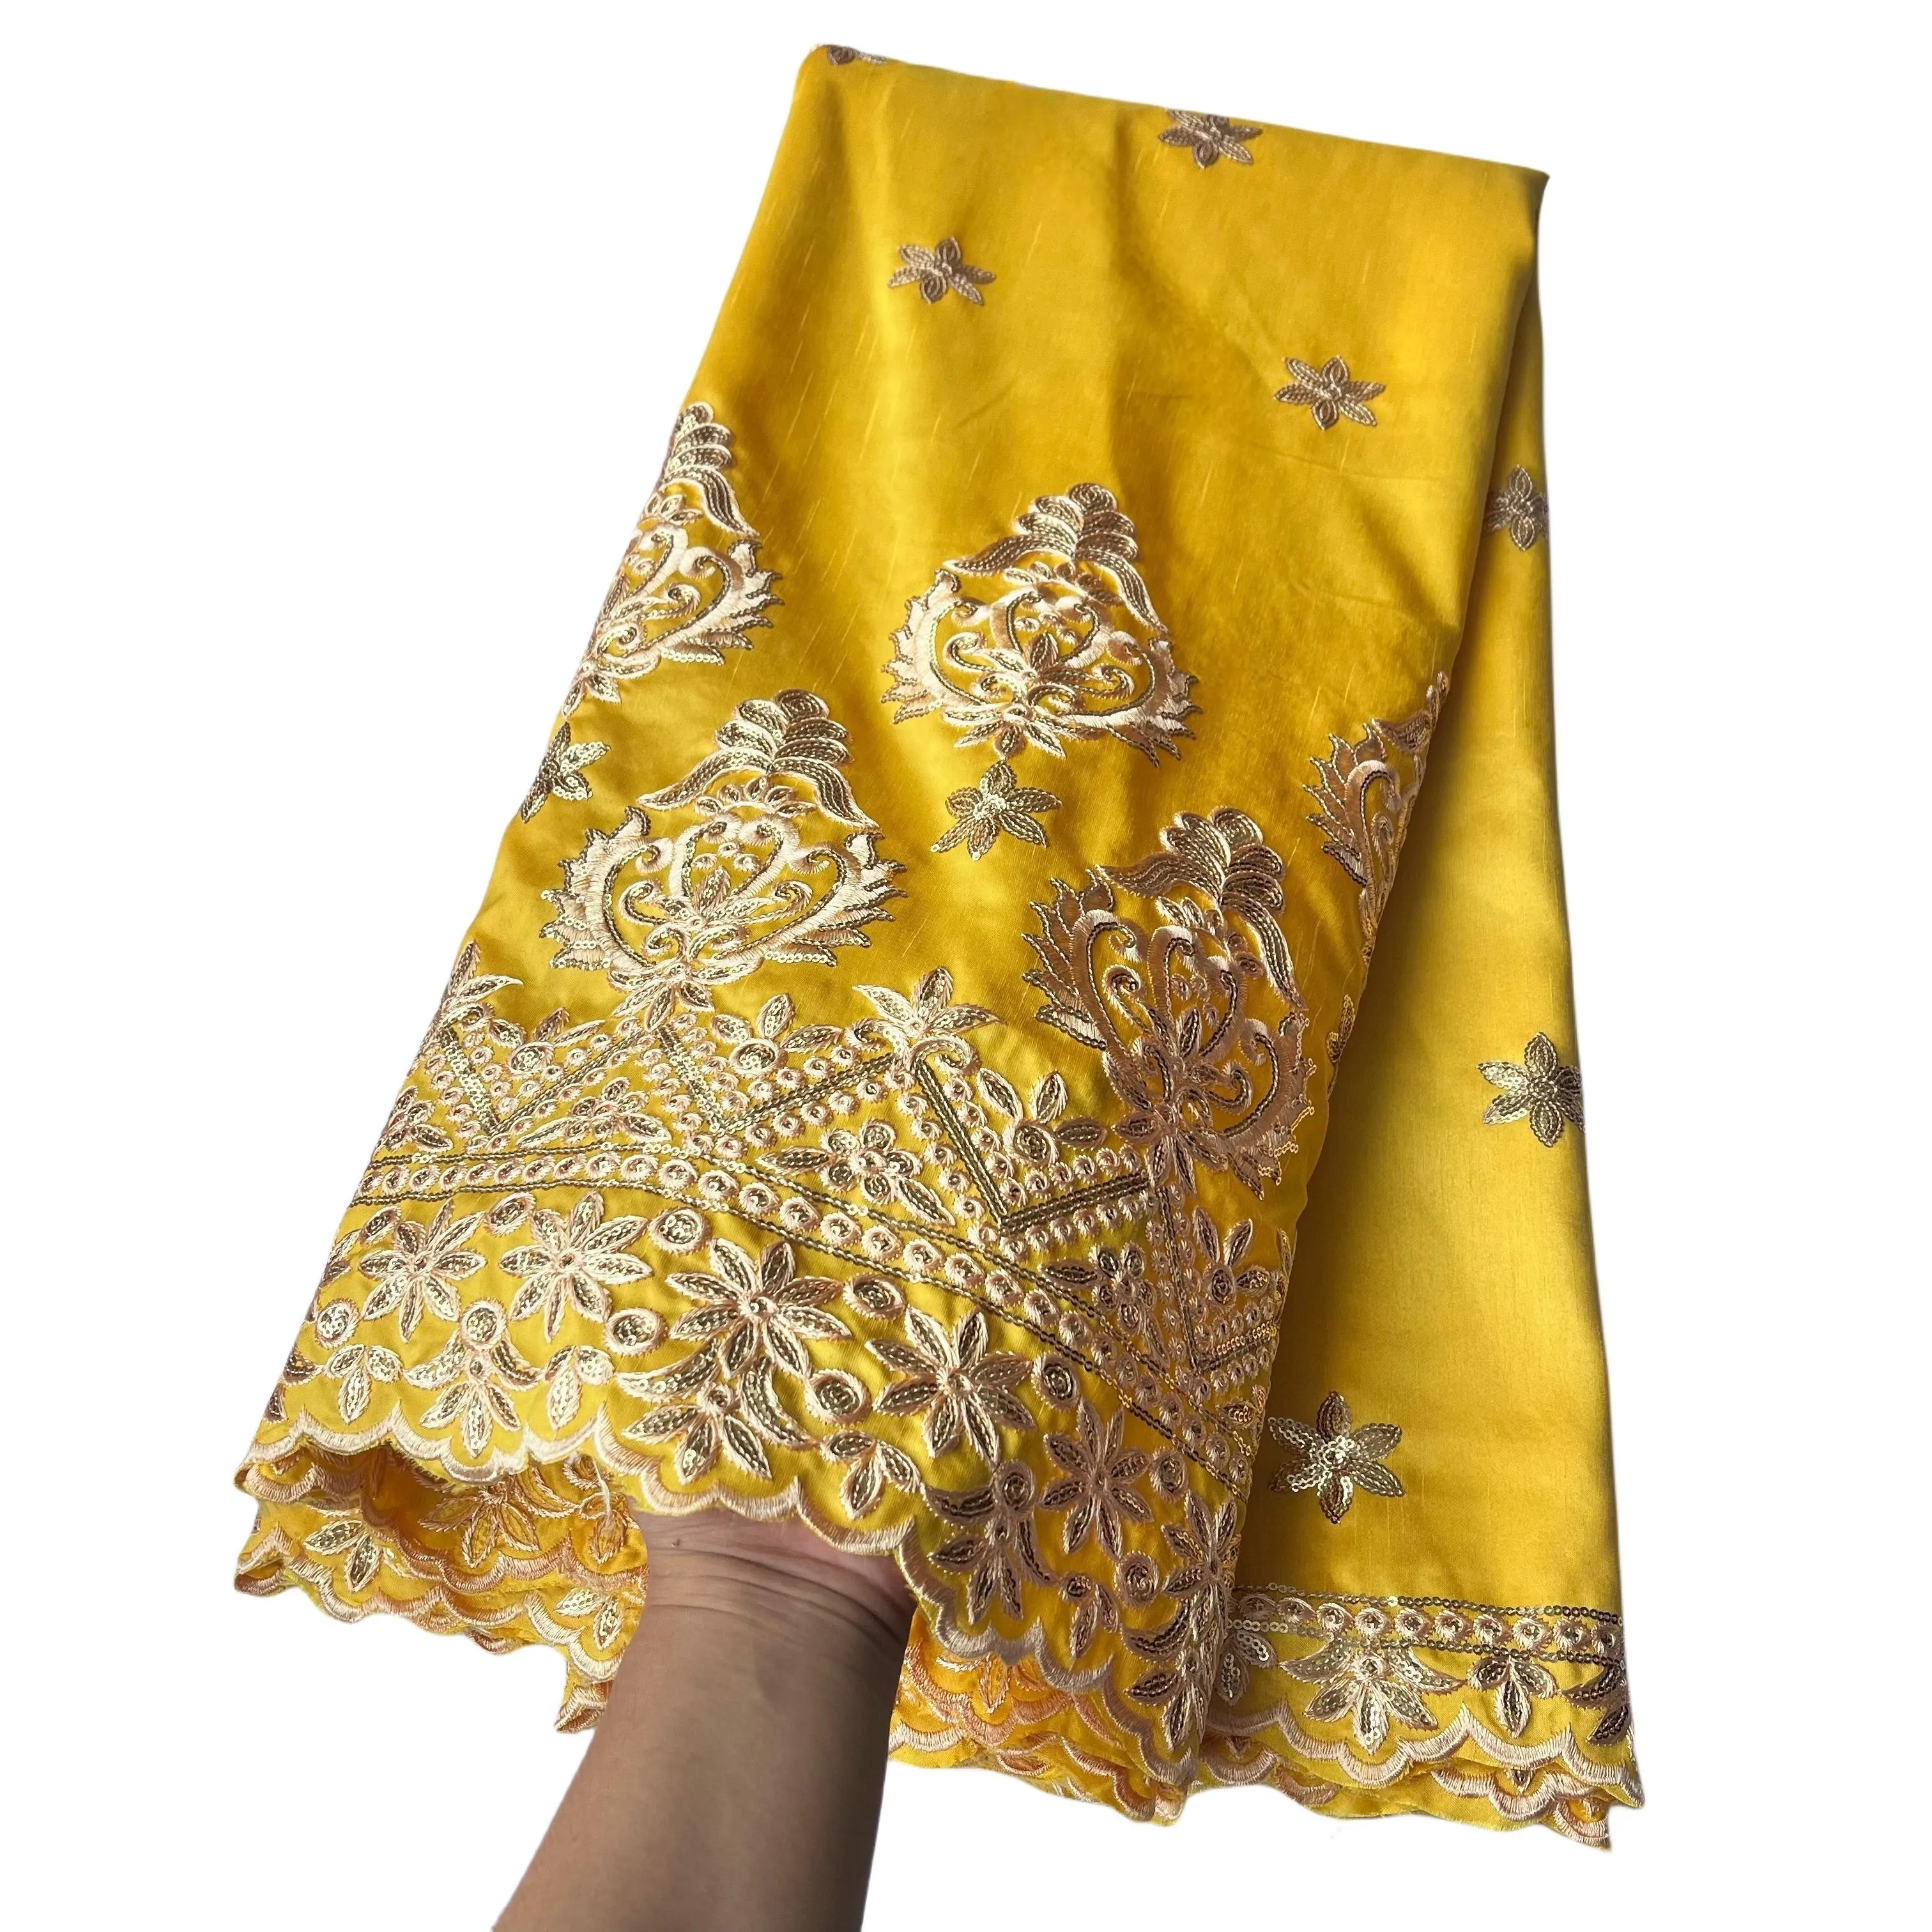 Dernières femmes africaines George dentelle tissu broderie dame soie robe florale couture artisanat 2023 haute qualité 5 mètres jaune Textile Costumes nigérian femme robe YQ-5028